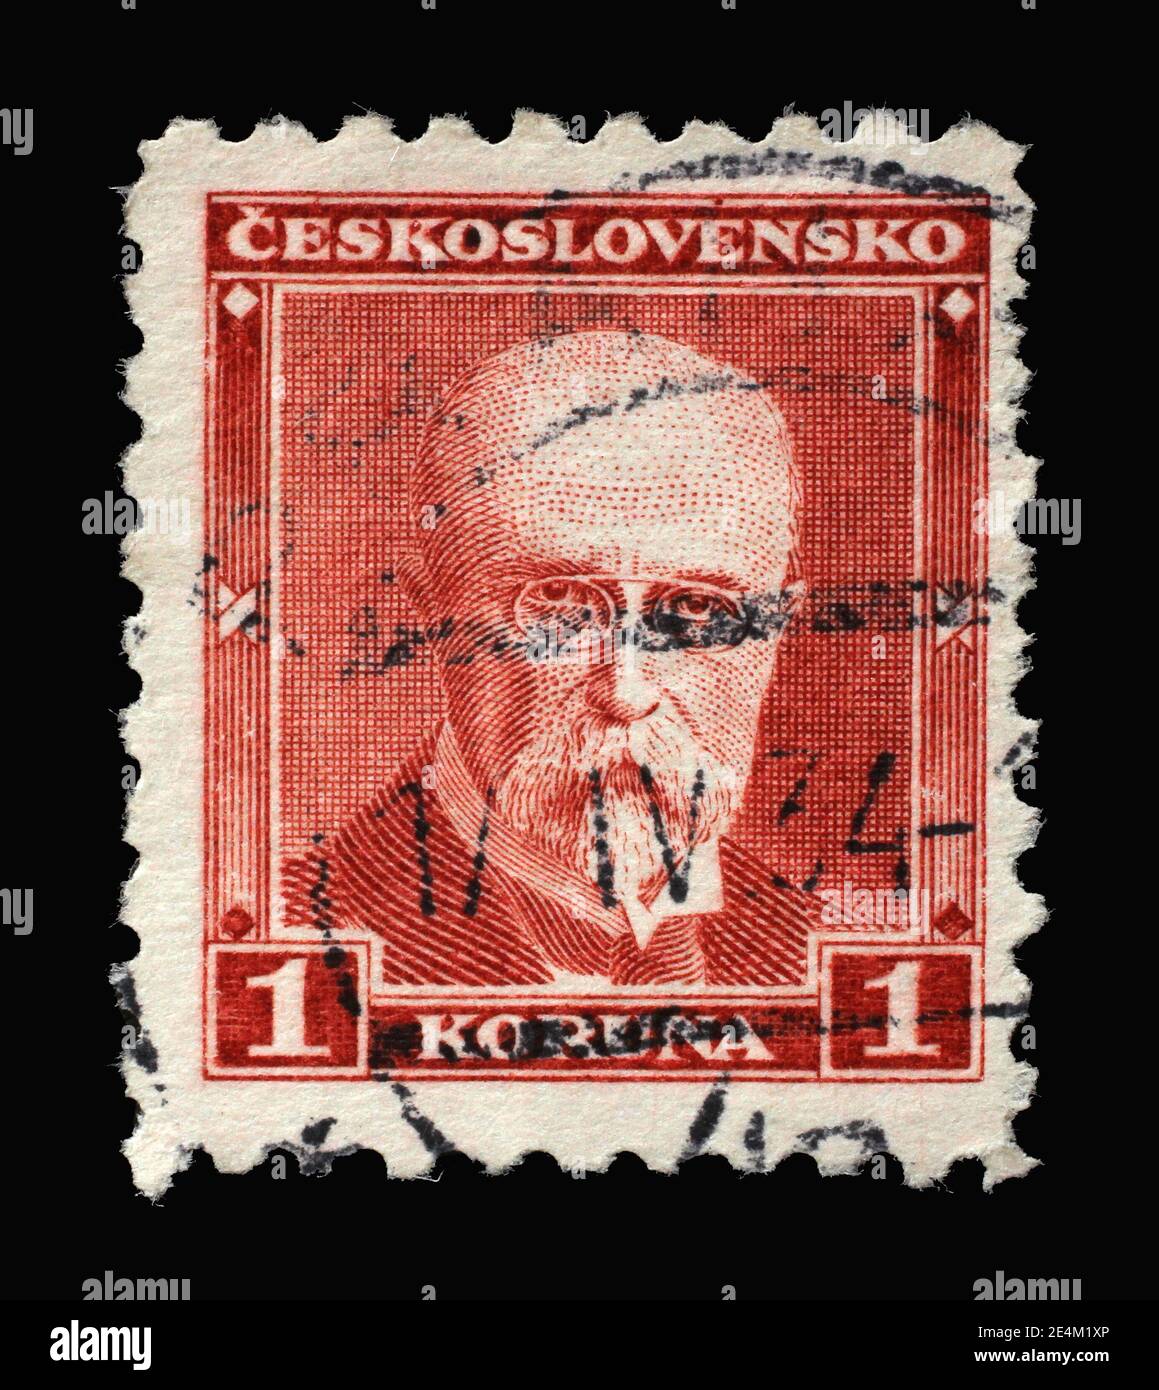 Die in der Tschechoslowakei gedruckte Briefmarke zeigt den ersten Präsidenten der Tschechoslowakei - Thomas Garrigue Masaryk, um 1930 Stockfoto